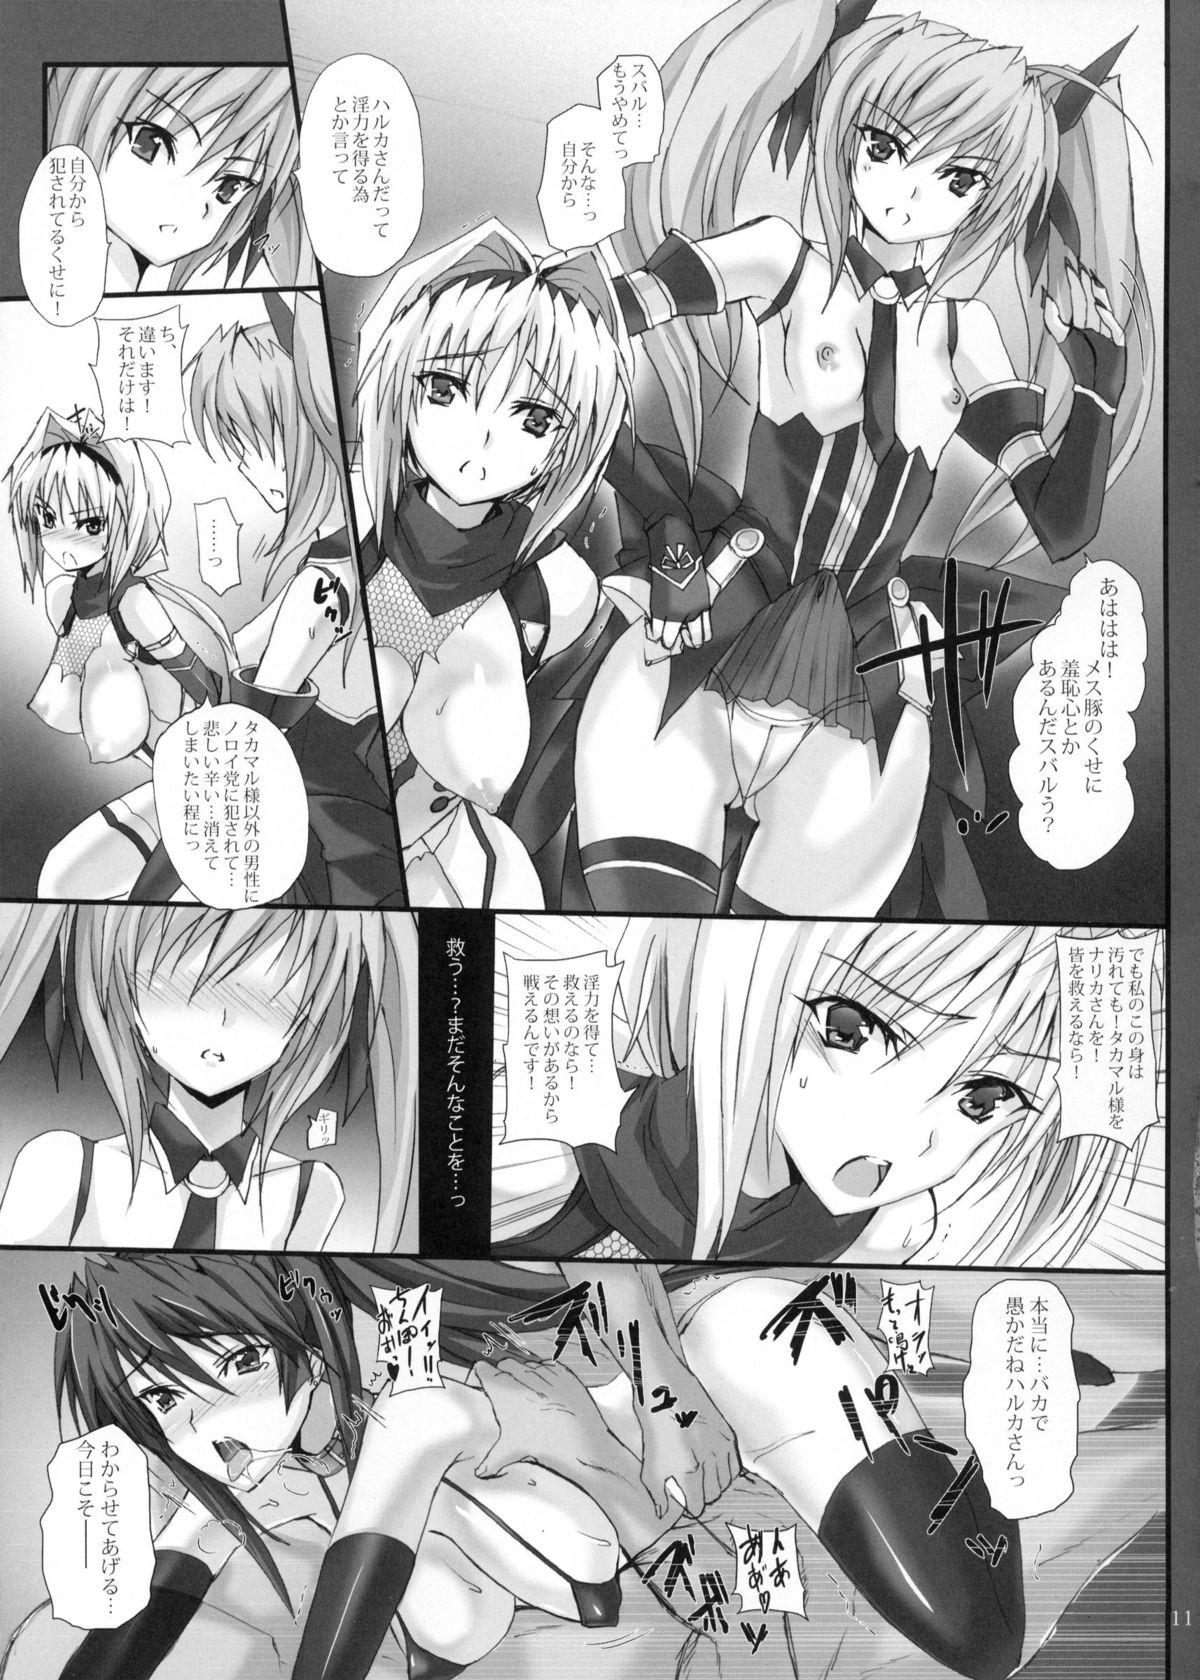 Exposed Yami wo Matoishi Homura wa Ono ga Mi wo Boukyaku no Gokuen e - Beat blades haruka Ass To Mouth - Page 10